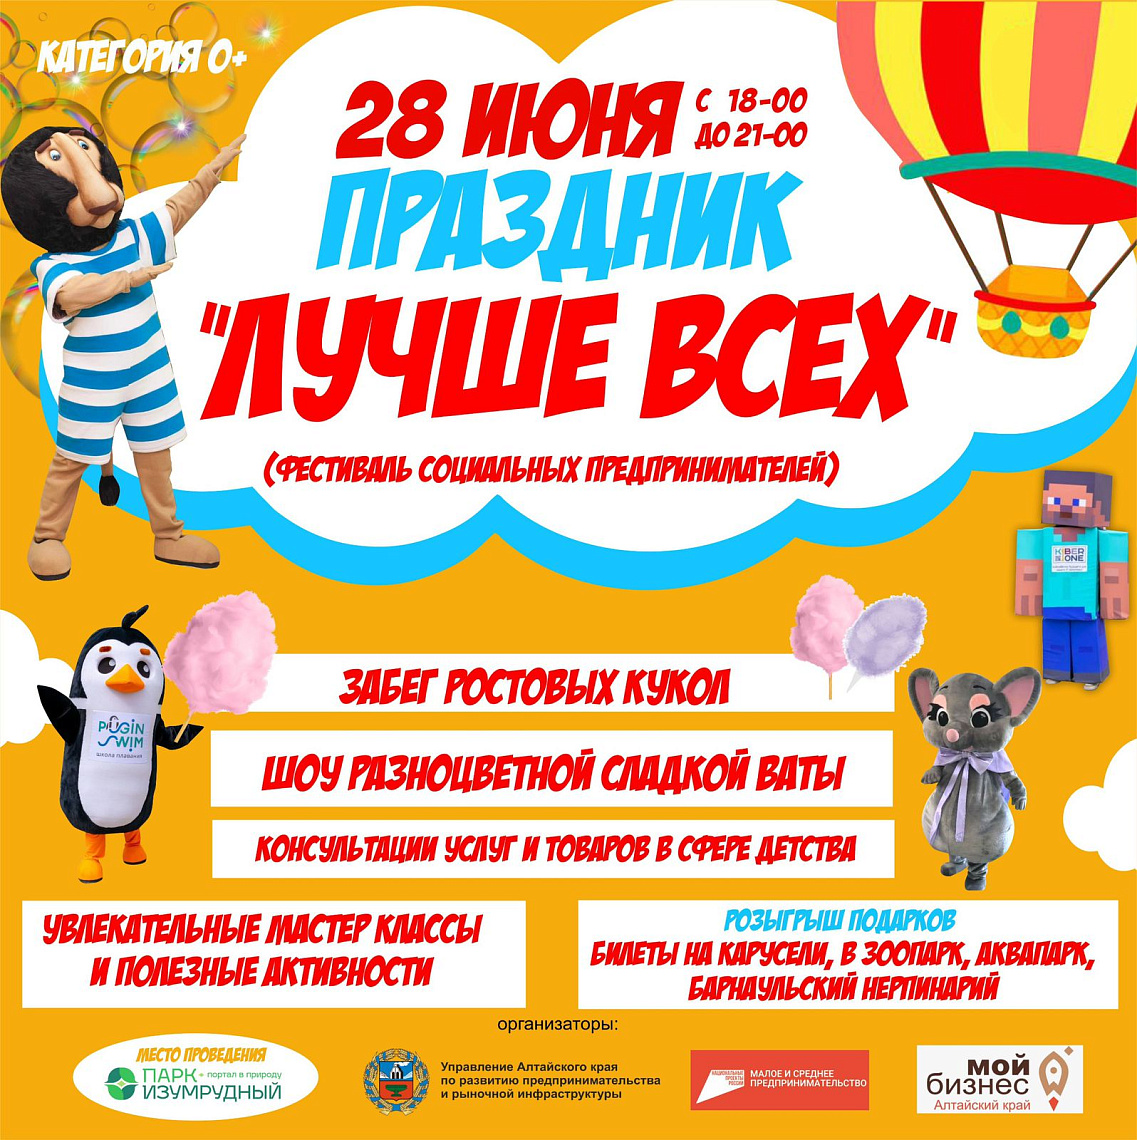 Жителей и гостей города Барнаула приглашаем на праздничное мероприятие, посвященное социальным предпринимателям региона